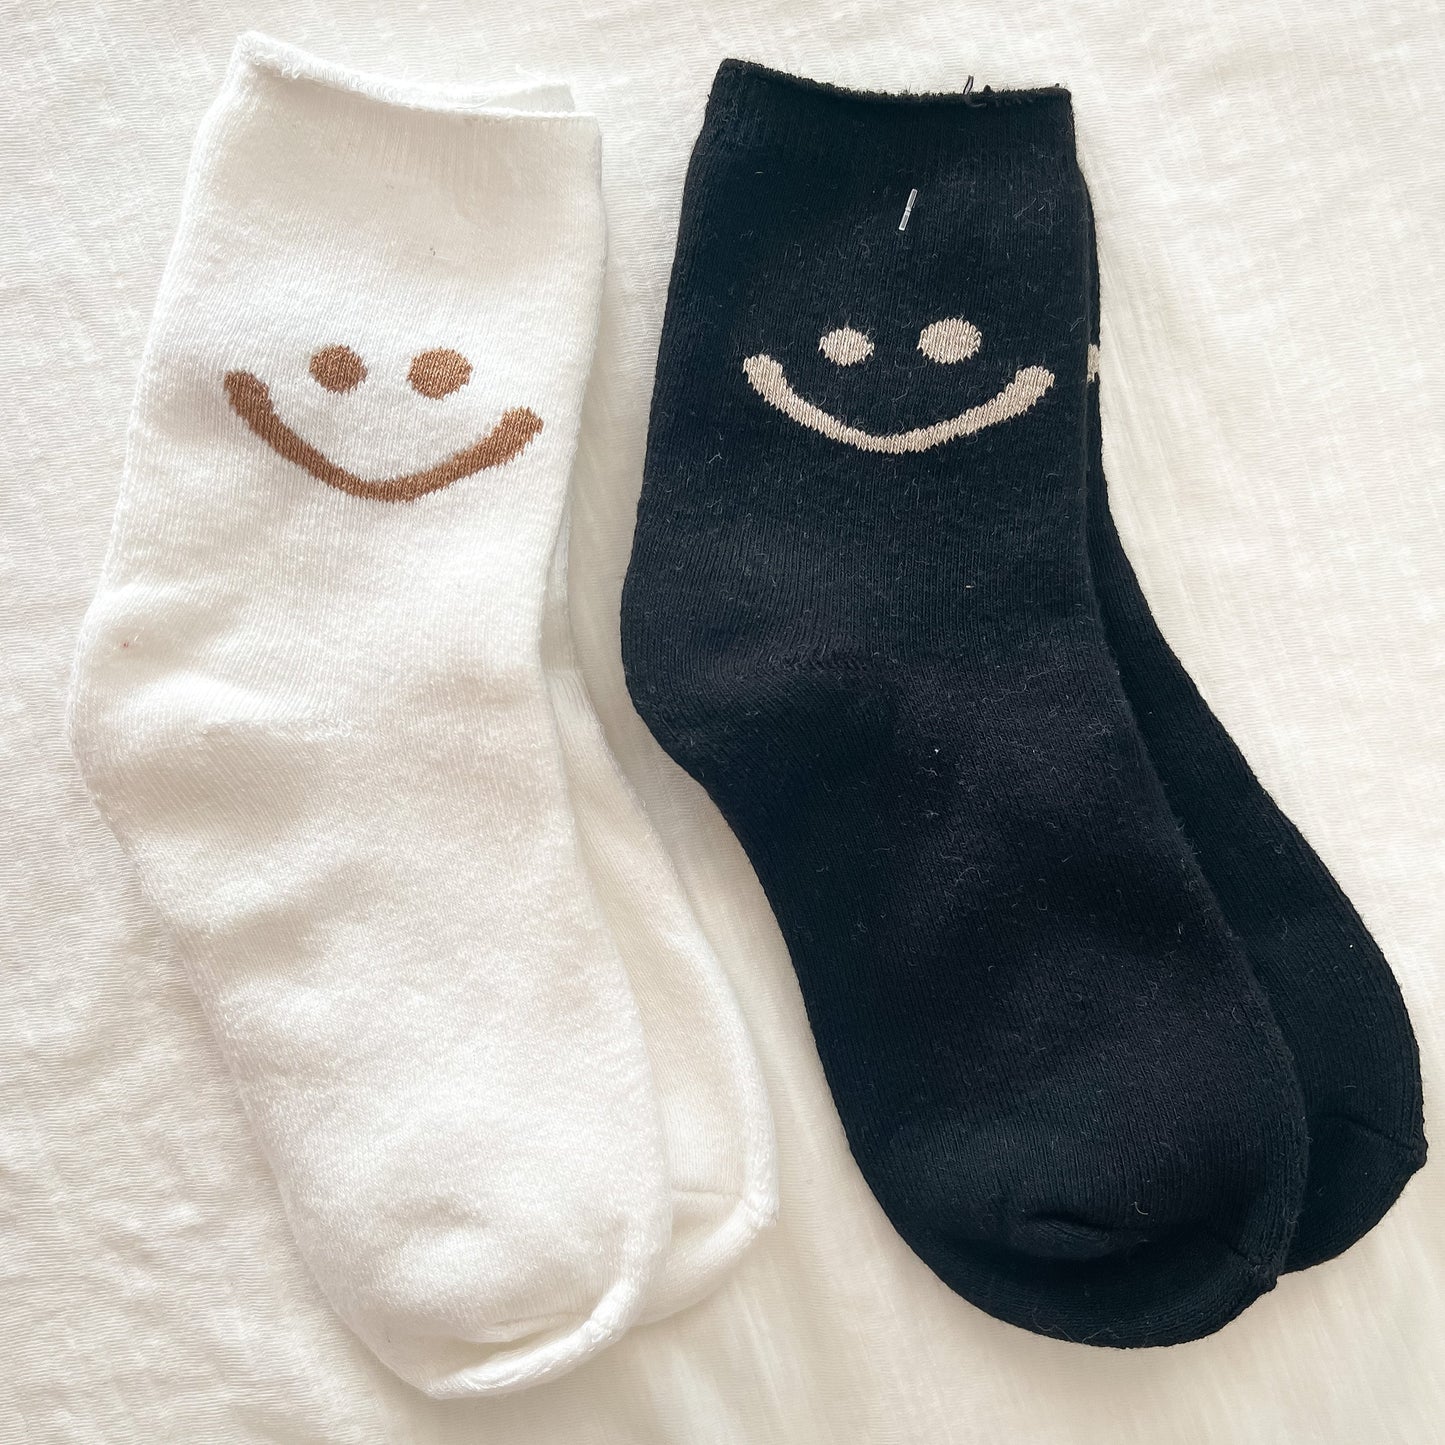 Neutral smile socks